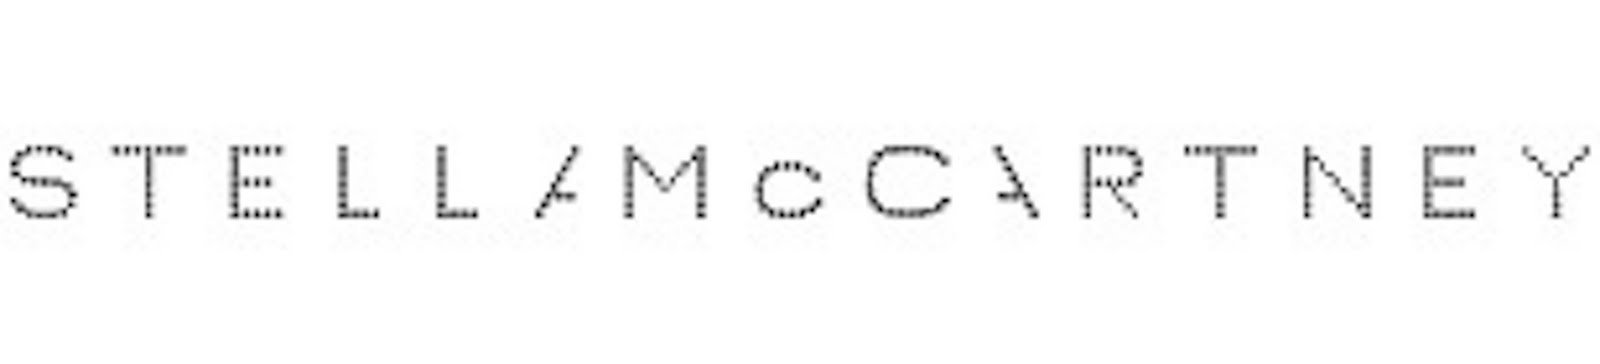 adidas stella mccartney logo